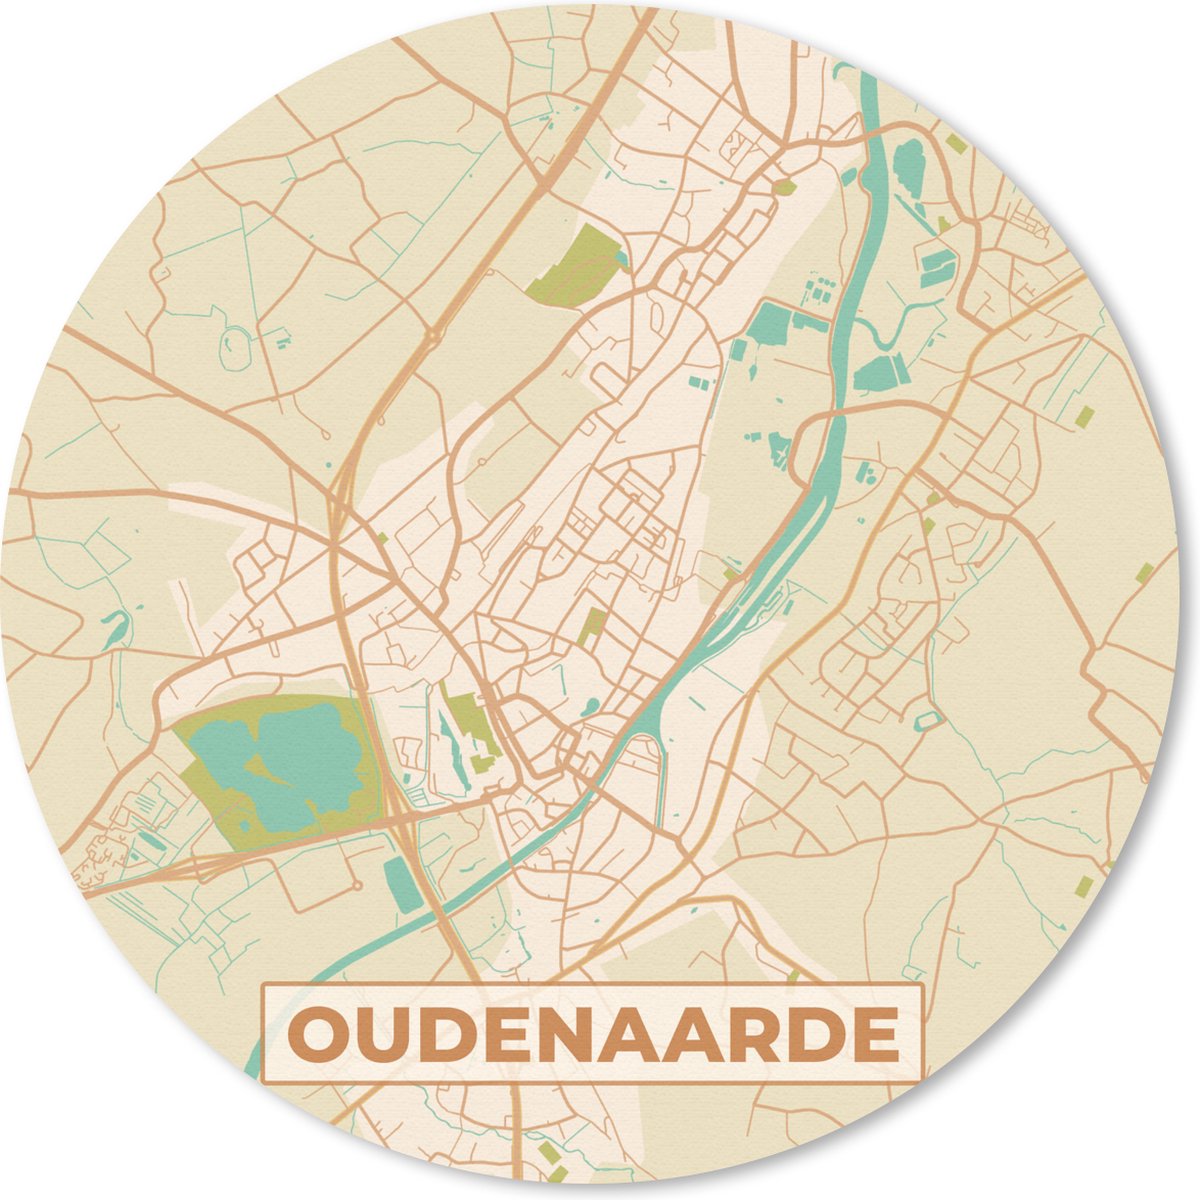 Muismat - Mousepad - Rond - Kaart - Plattegrond - Oudenaarde - Stadskaart - Vintage - 20x20 cm - Ronde muismat